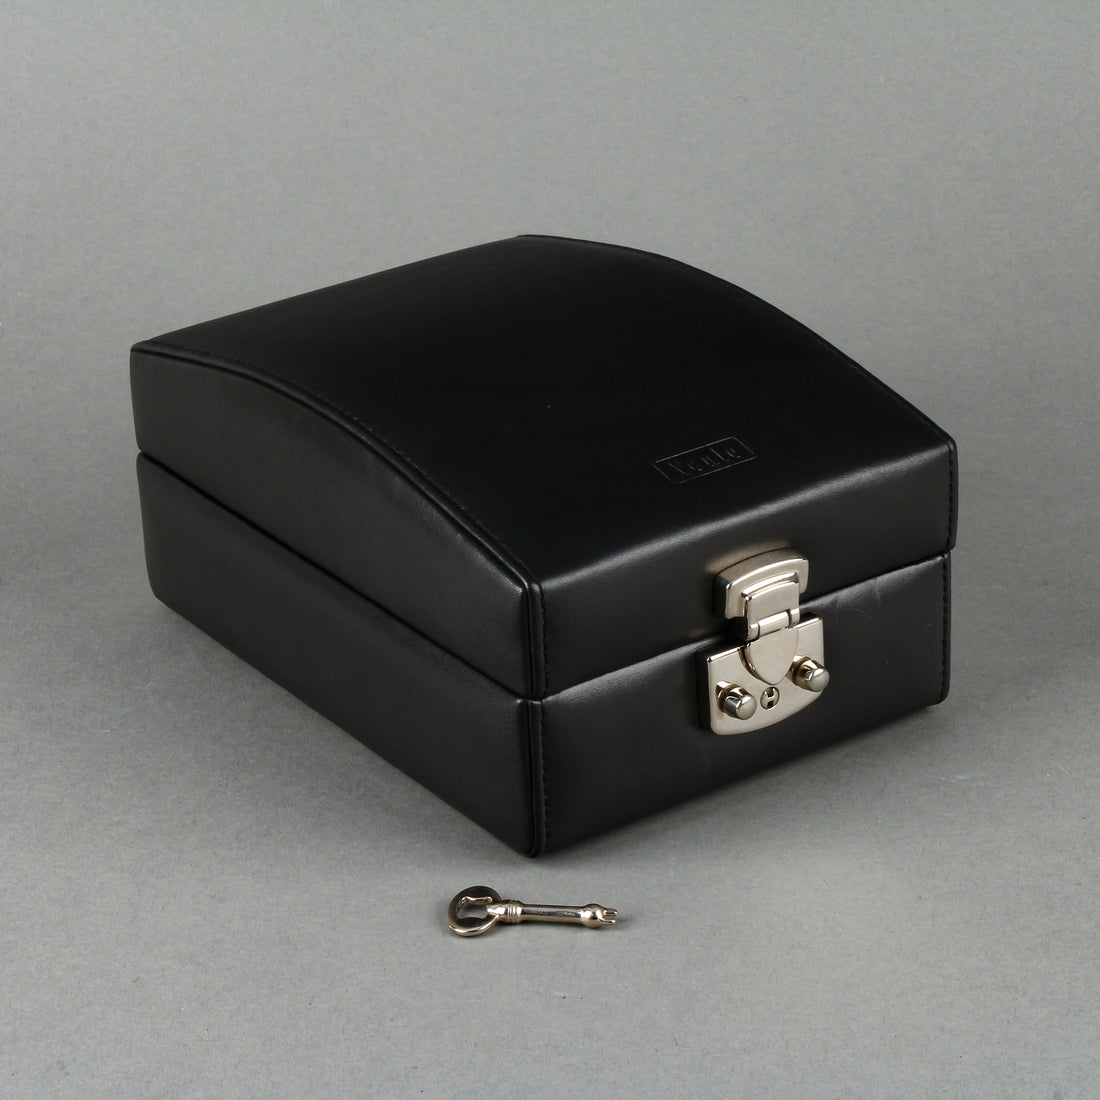 VENLO Sienna Black Leather 4 Watch Travel/Storage Case